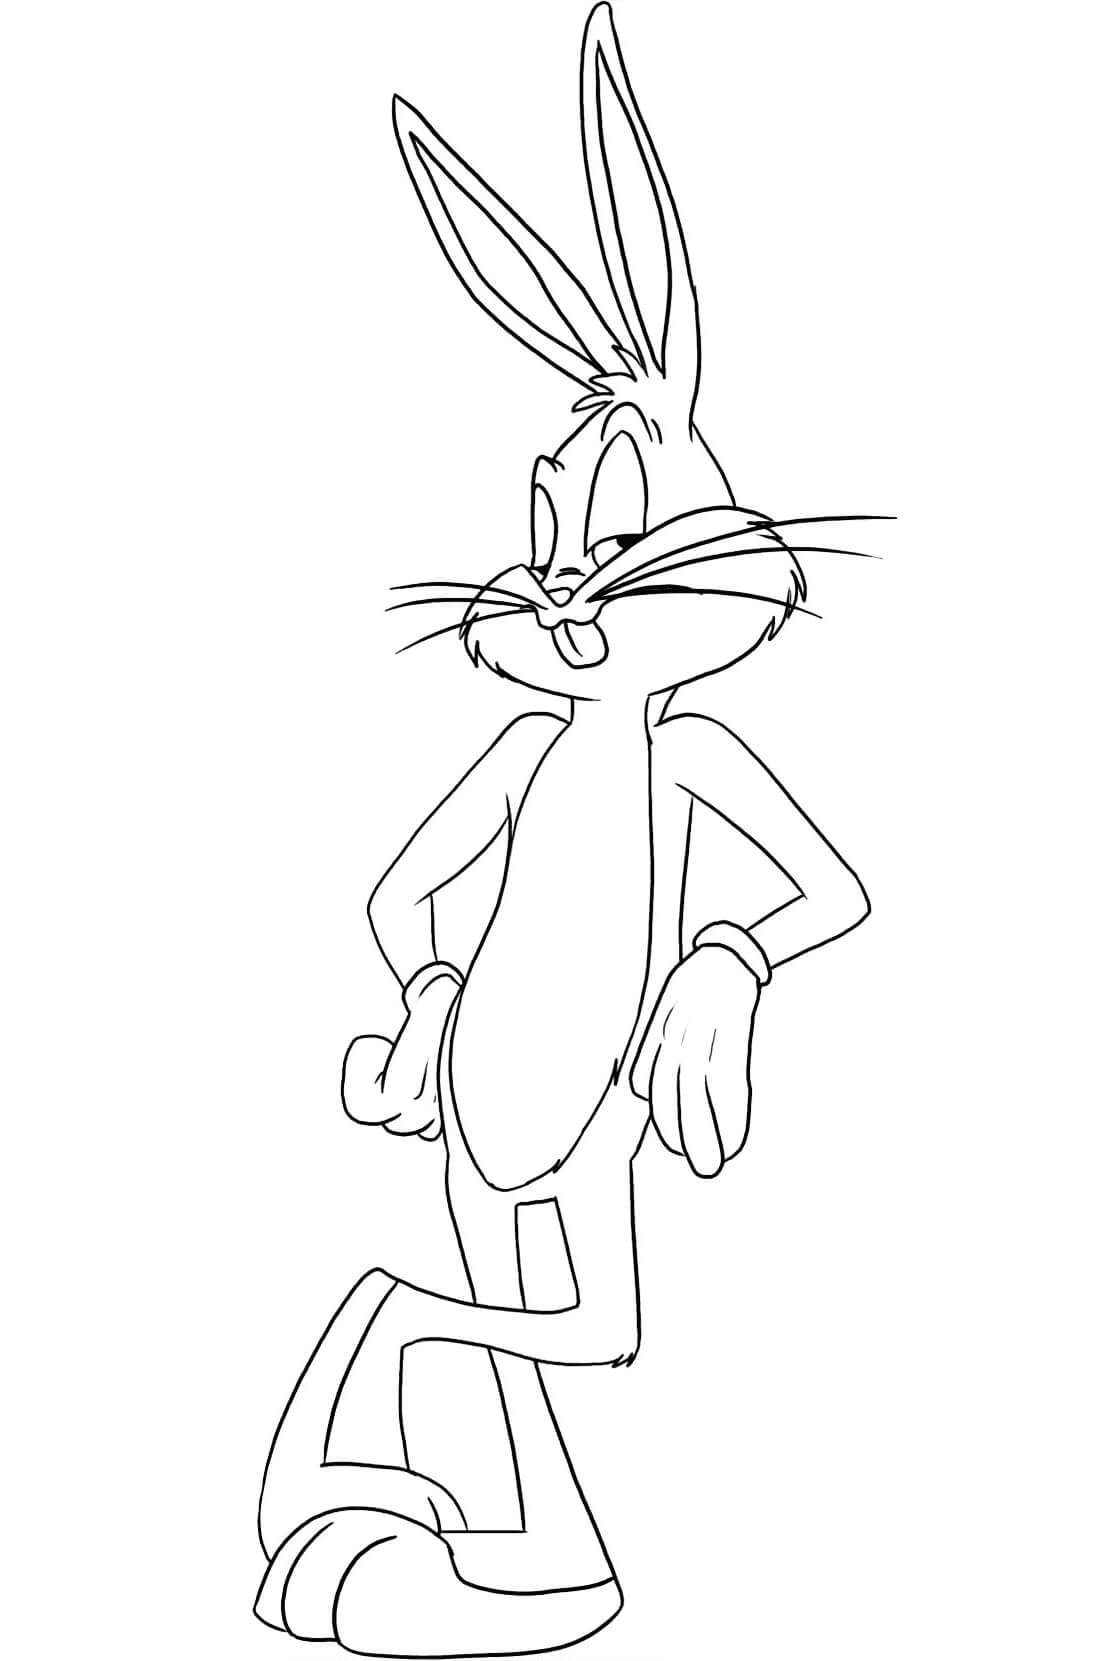 Dibujos de Bugs Bunny de Looney Tunes para colorear